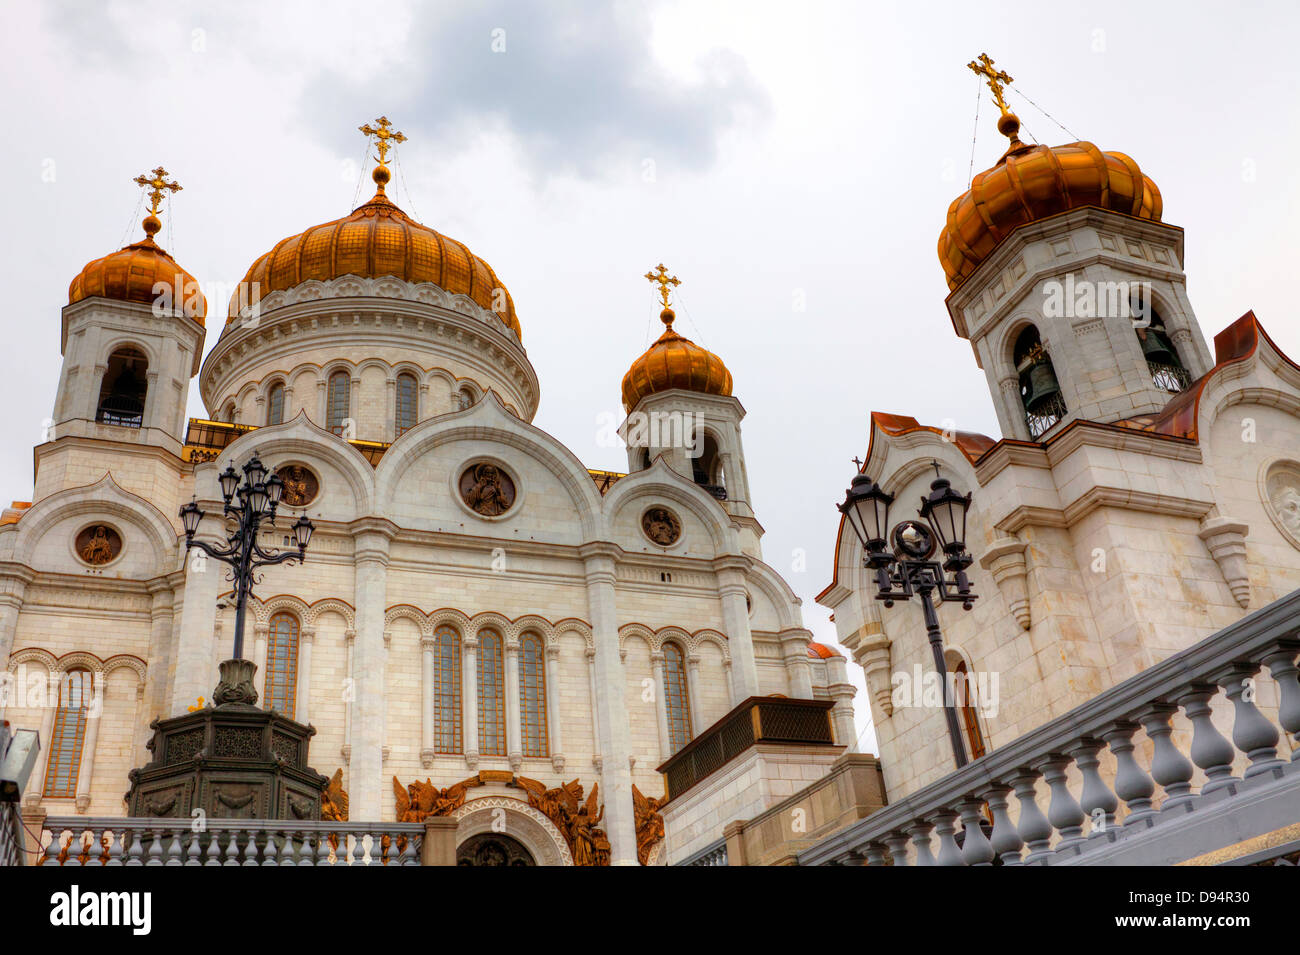 Kathedrale von Christus dem Erlöser in Moskau wurde als eine Danksagung an Gott und an die siegreiche russische Armee im Jahre 1812 zu Ehren errichtet. Stockfoto